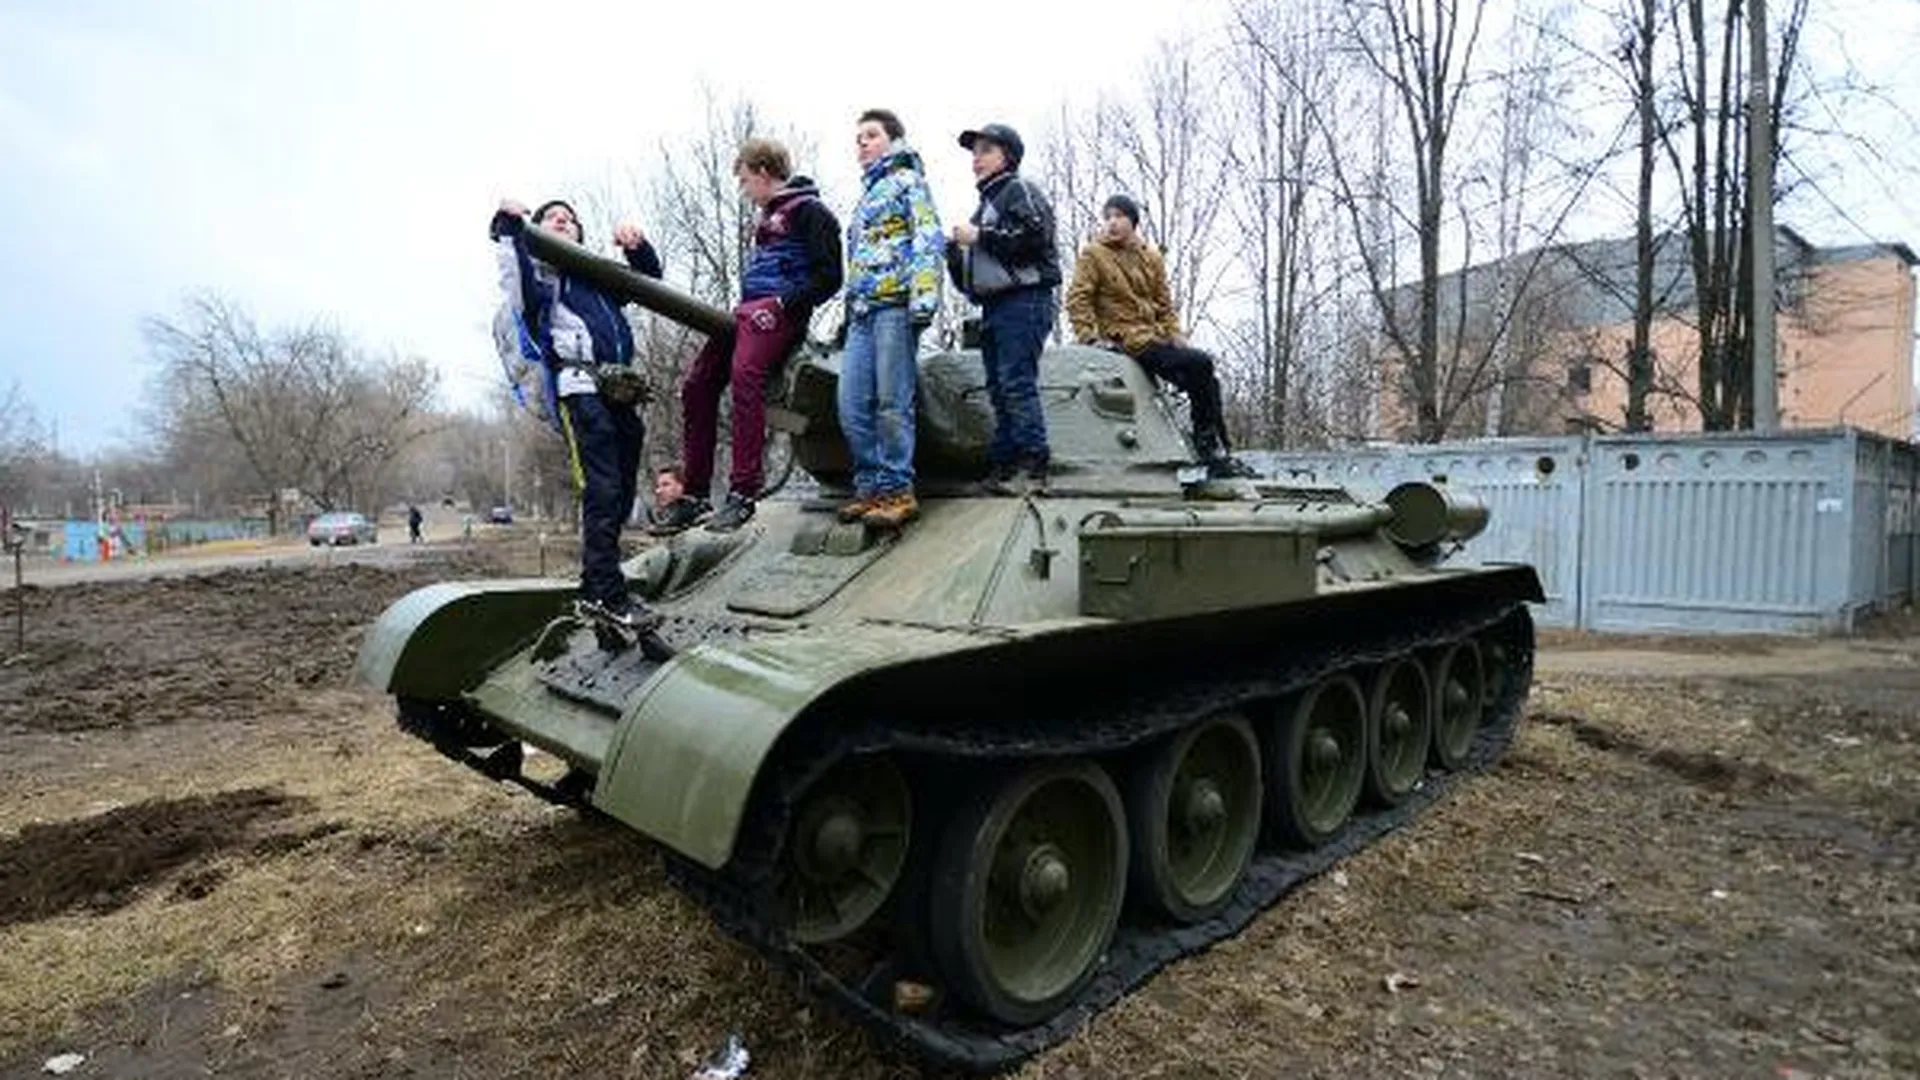 Священник пригнал из Саратова в Пушкино танк к юбилею Победы